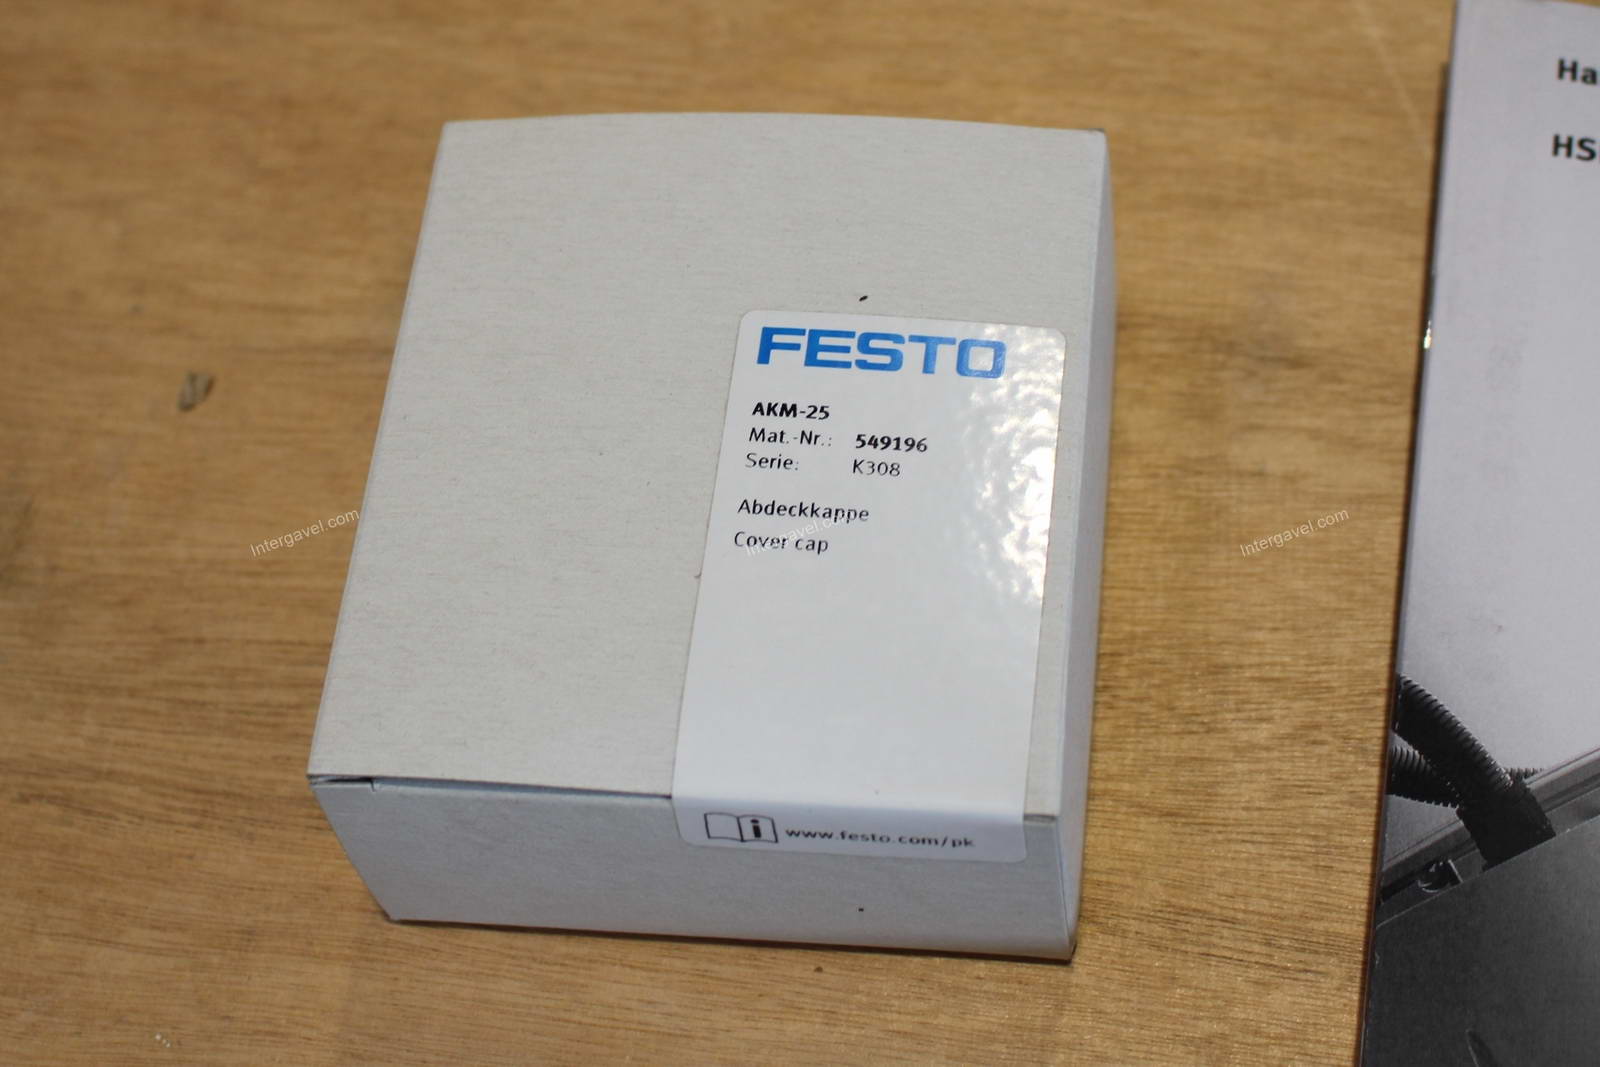 Handling (átrakó) modul - Festo,  HSP-25-AP-SD